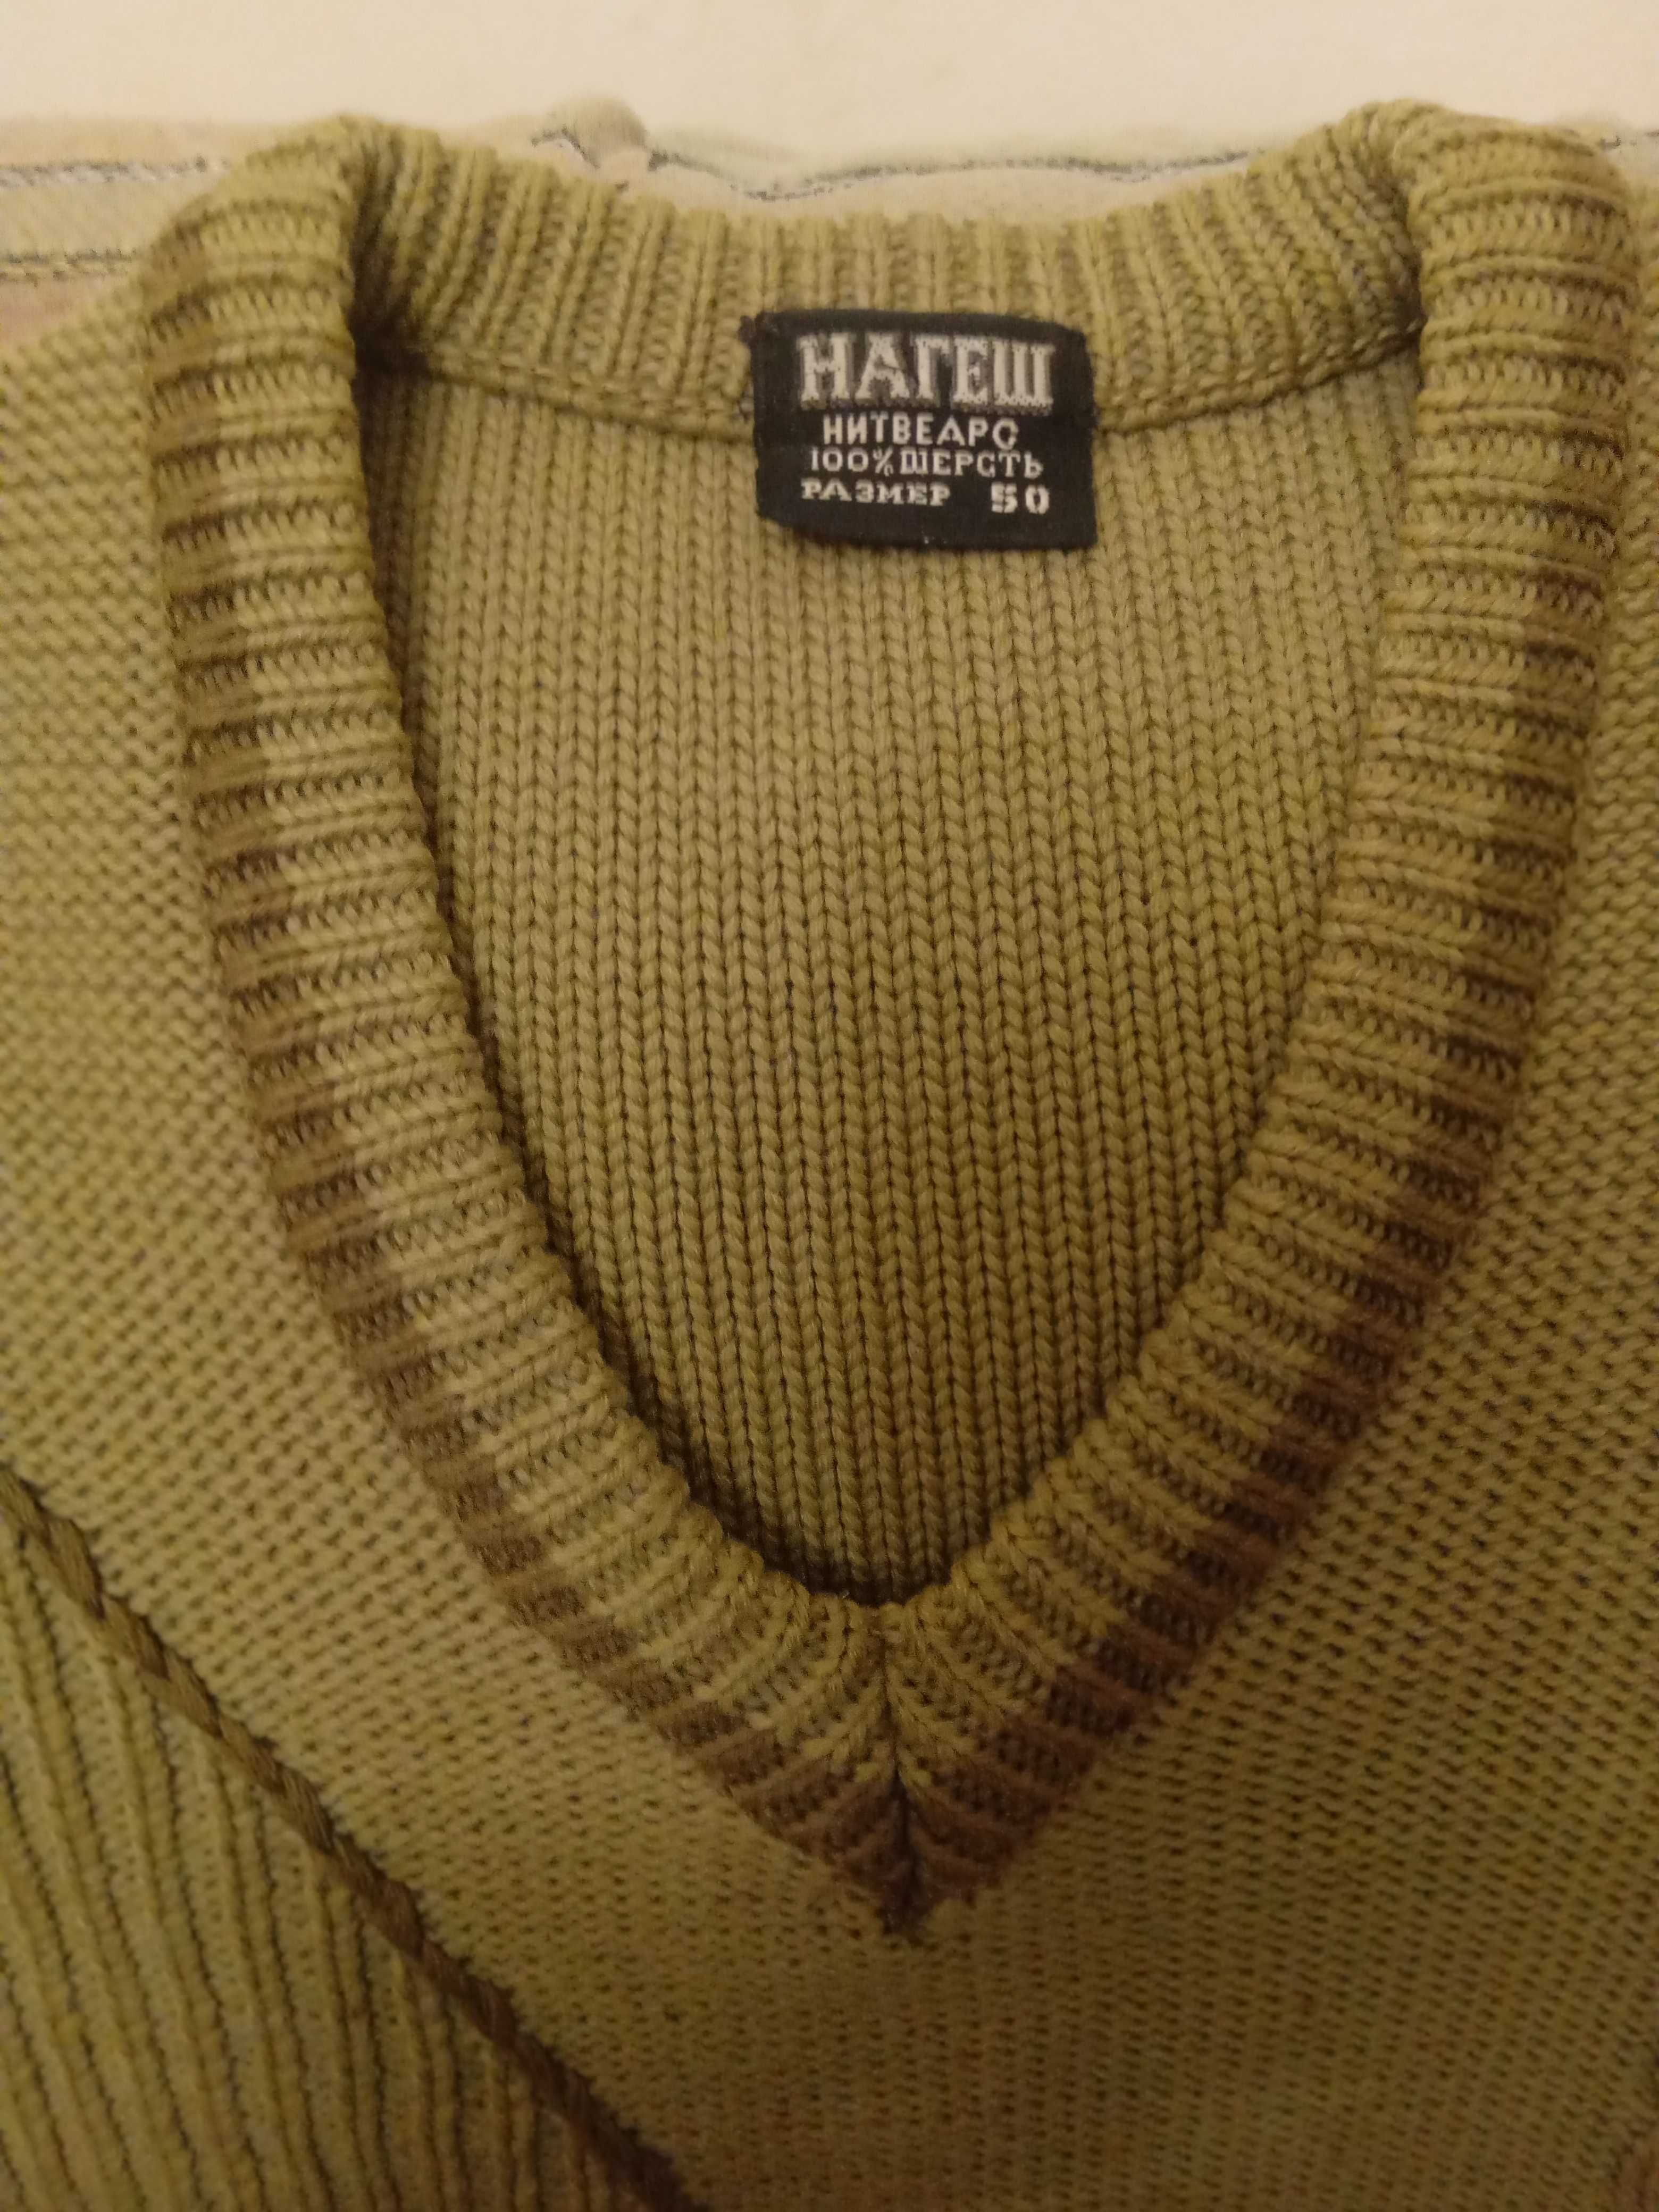 Пуловер мужской, шерсть 100%, цвет оливковый, производство Индия